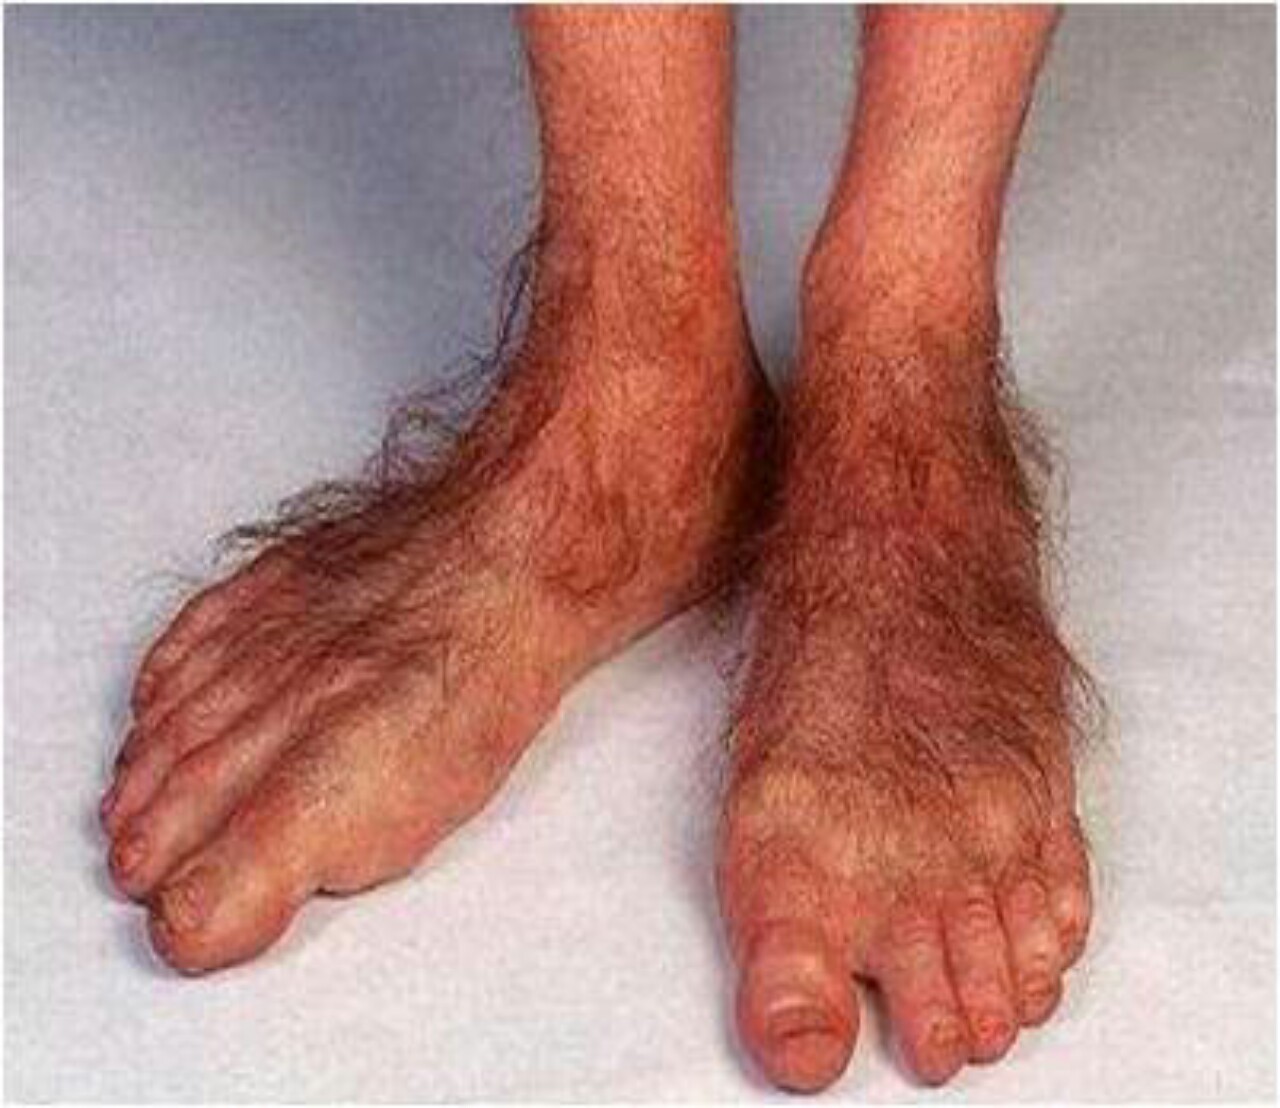 hobbit-feet1-1280x1108.jpg